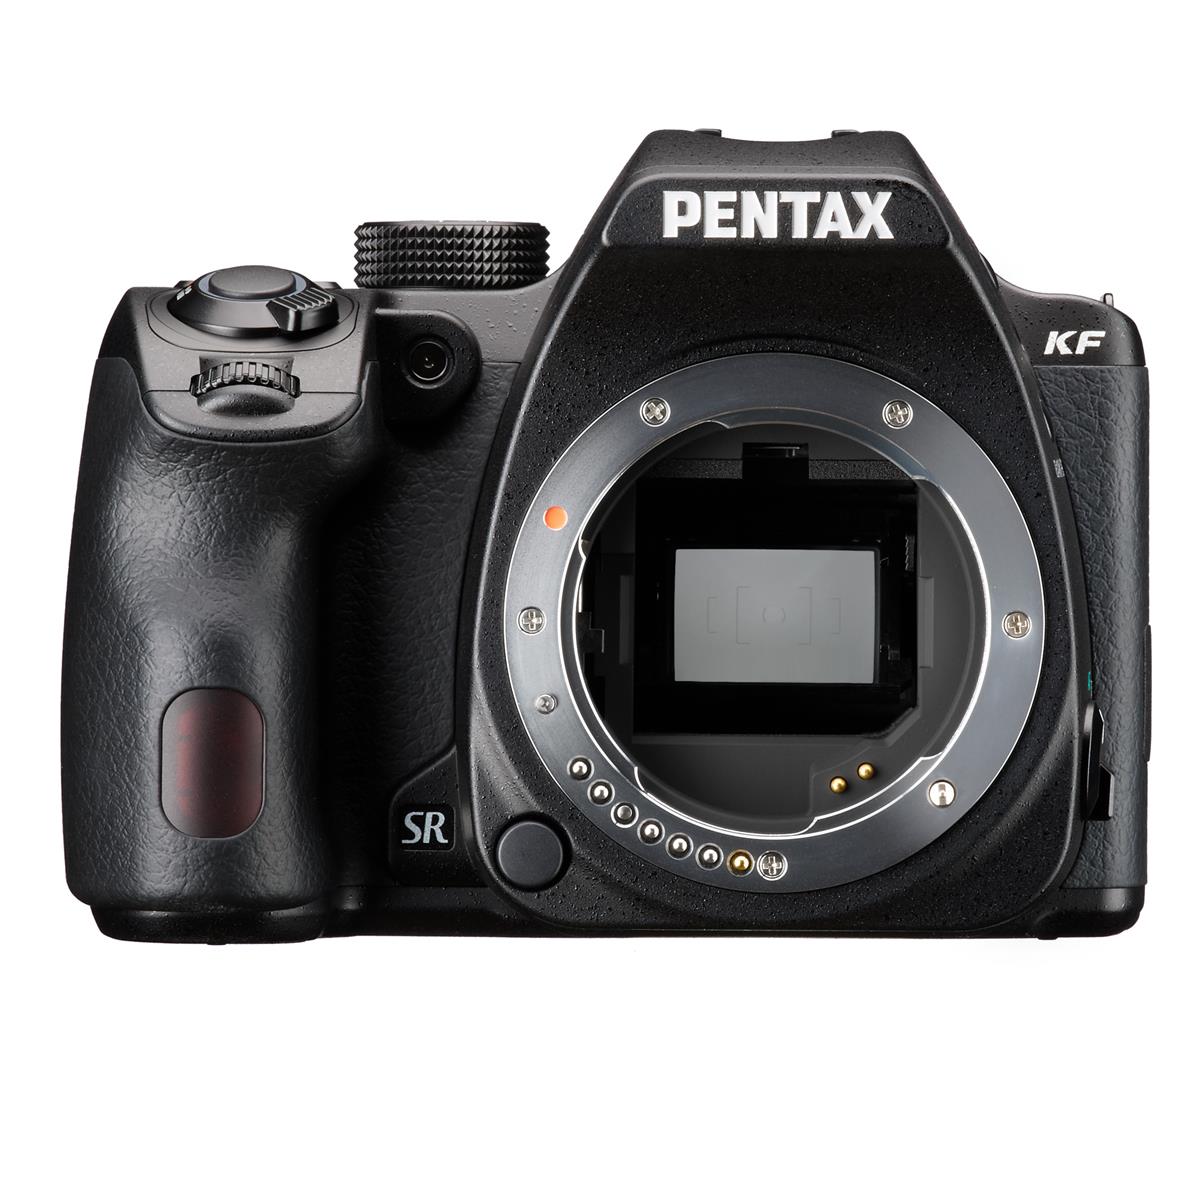 Image of Pentax KF DSLR Camera 